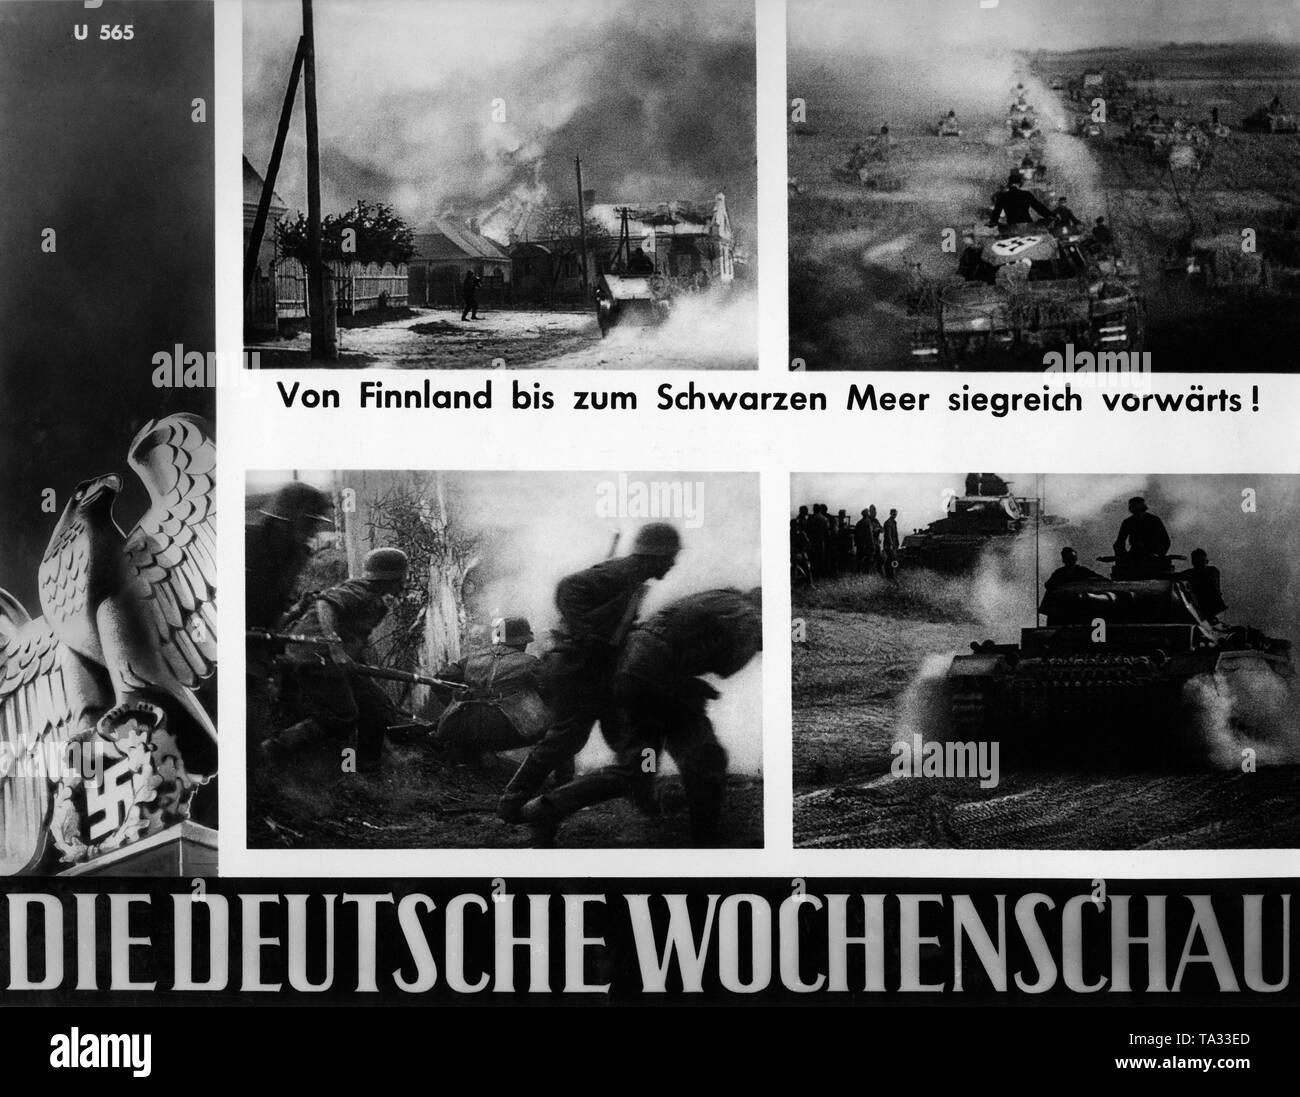 Fotos de la Deutsche Wochenschau al comienzo de la campaña Rusa: ardor aldea rusa (parte superior izquierda), alemán Panzerkolonne (parte superior derecha), la infantería alemana en la batalla (abajo a la izquierda), el alemán Panzer III (derecha abajo). Foto de stock